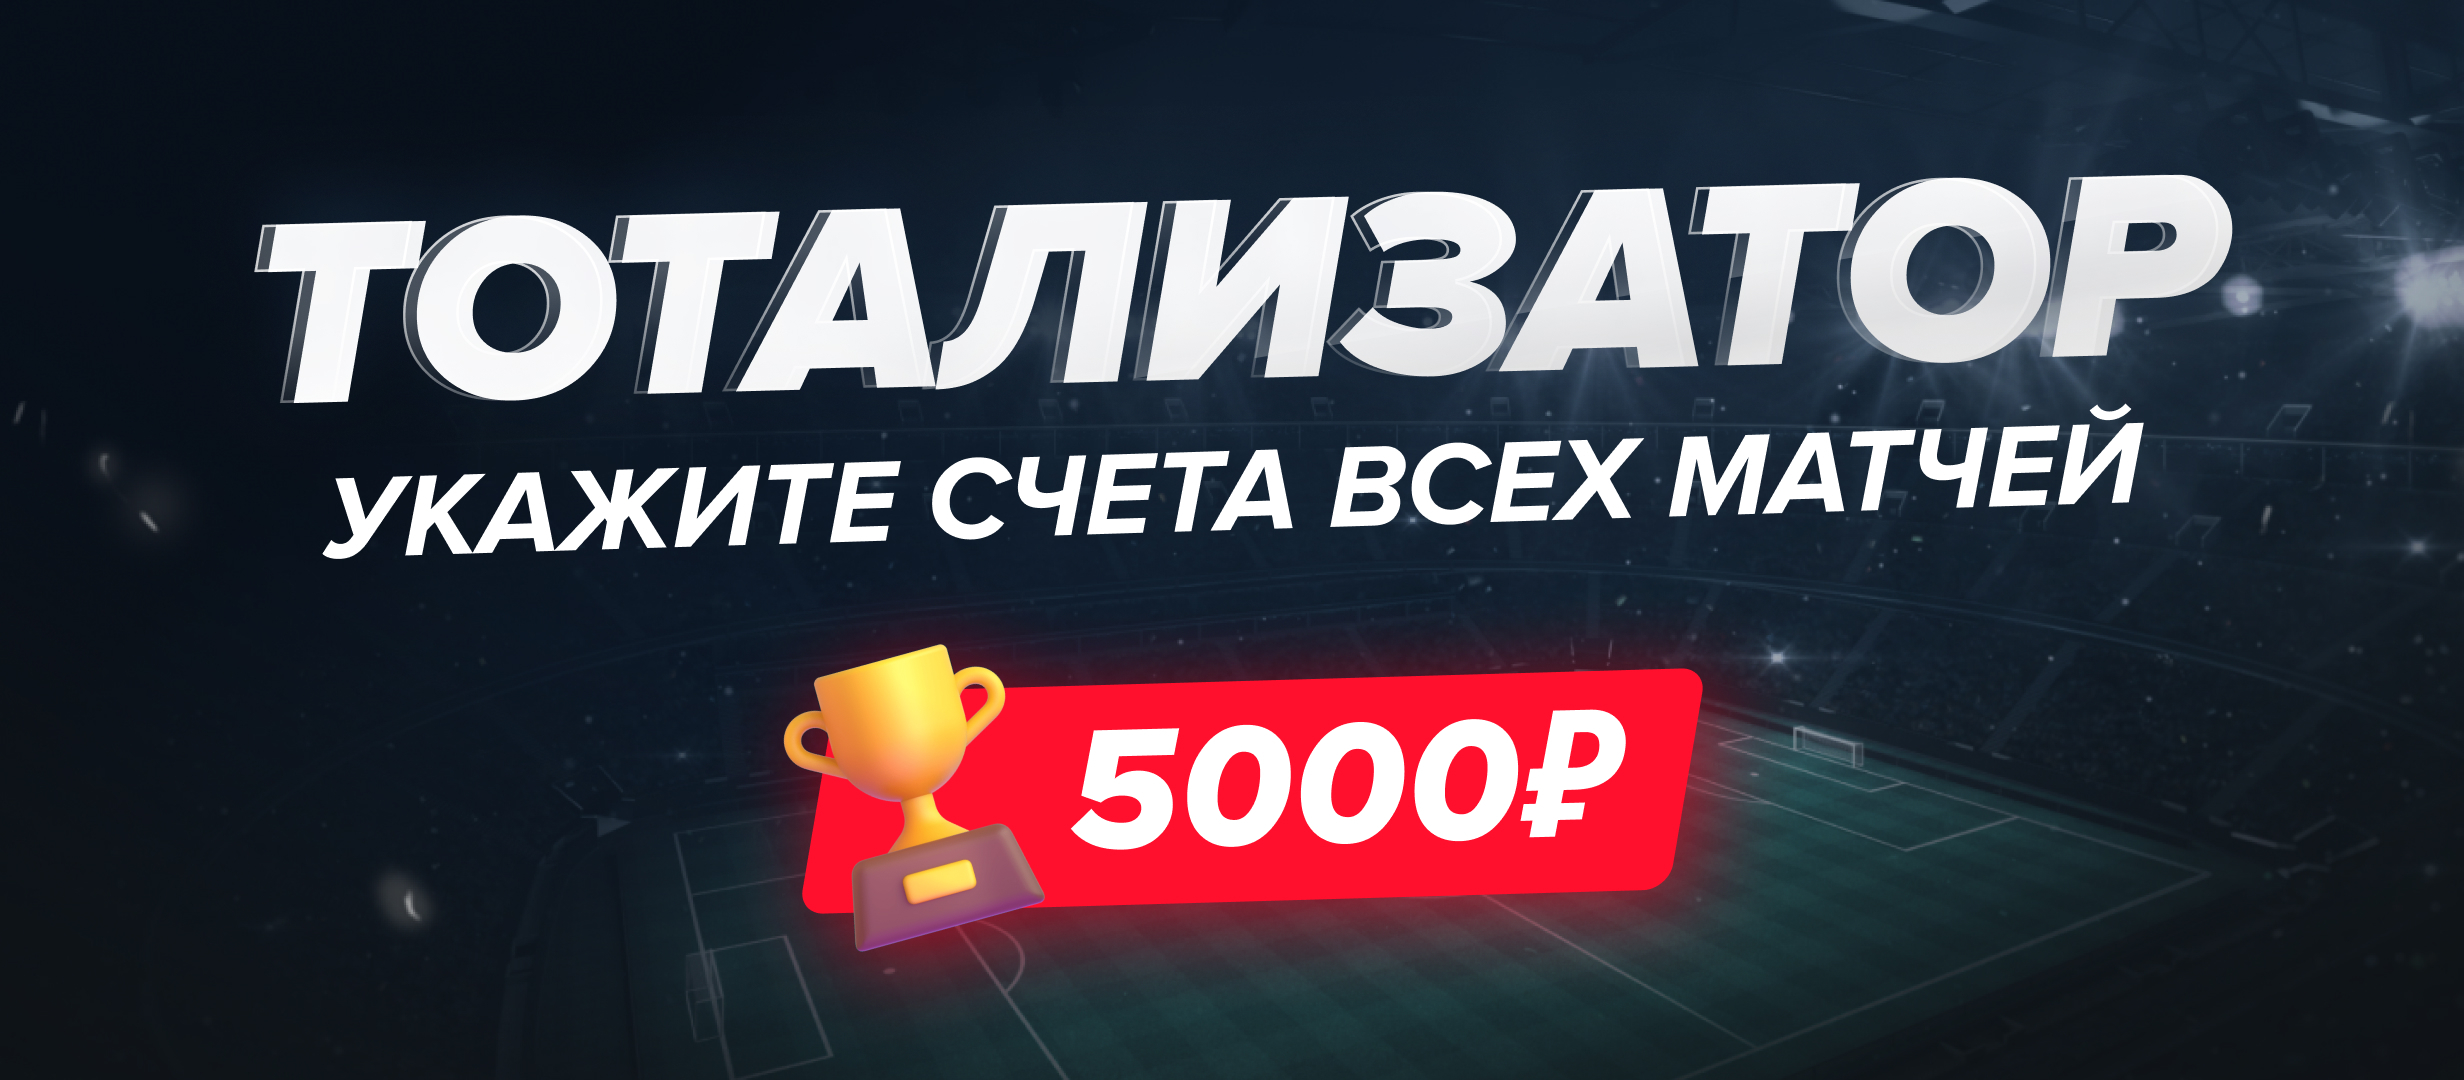 Тотализатор на футбольные выходные: разыгрываем 5000 рублей!